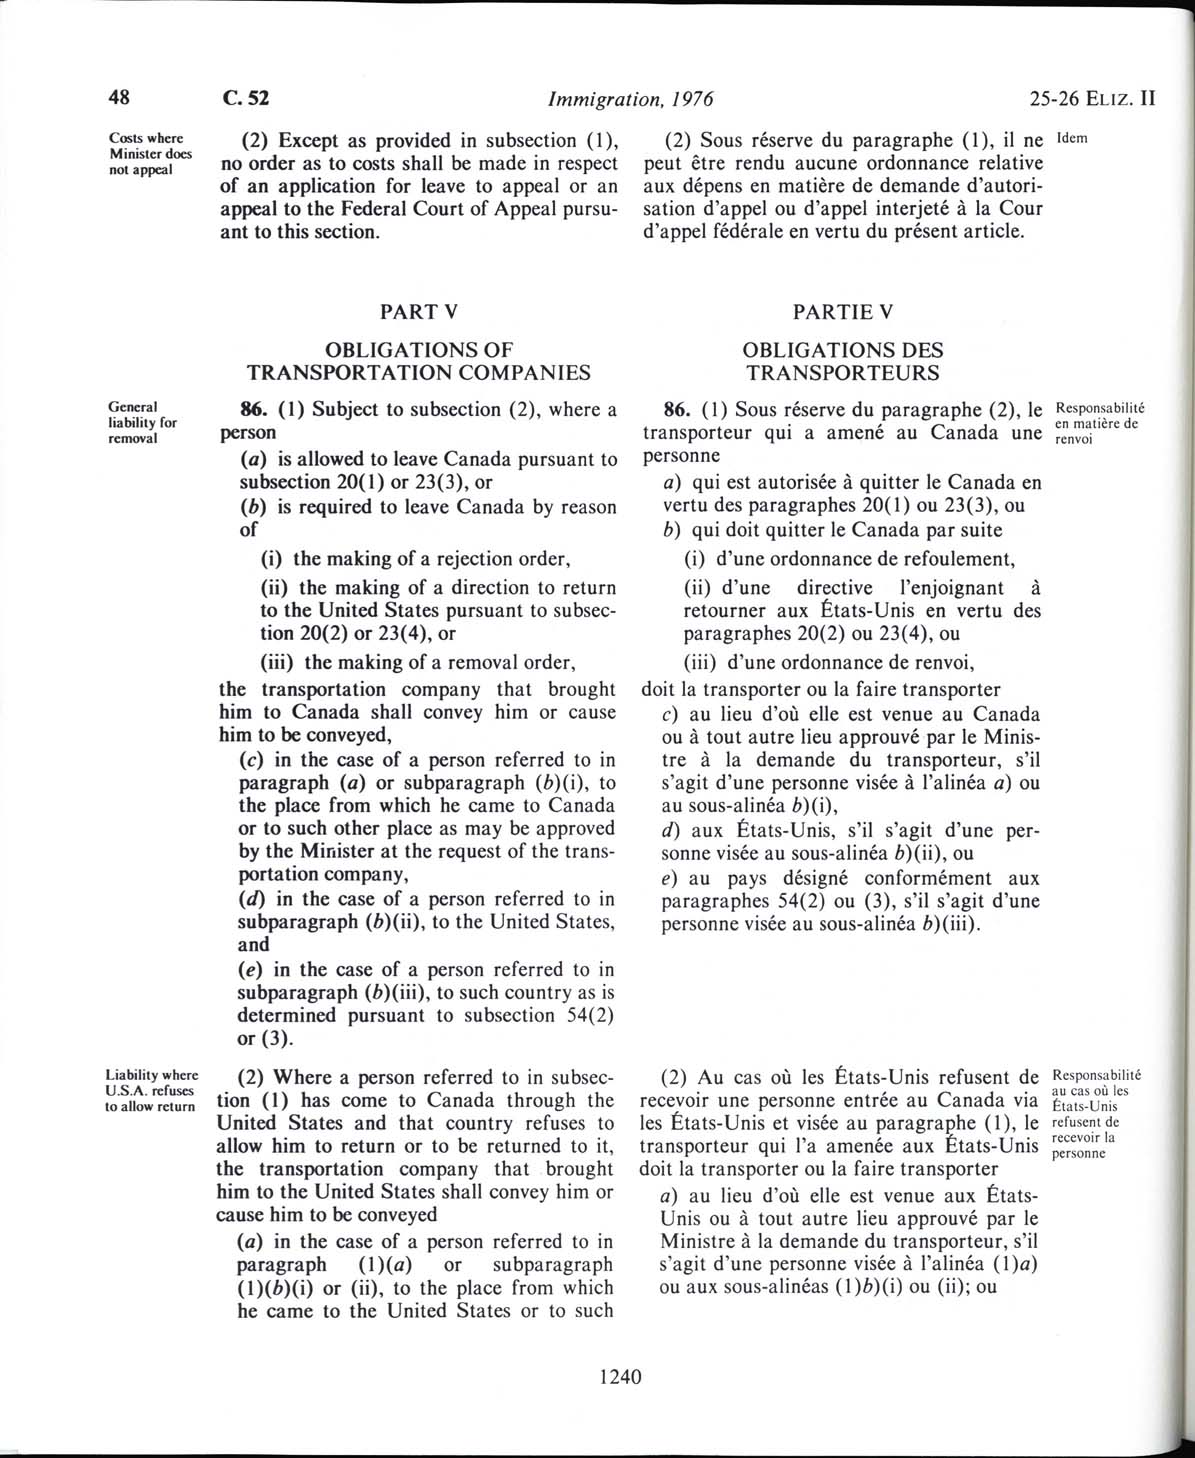 Page 1240 Loi sur l’immigration de 1976